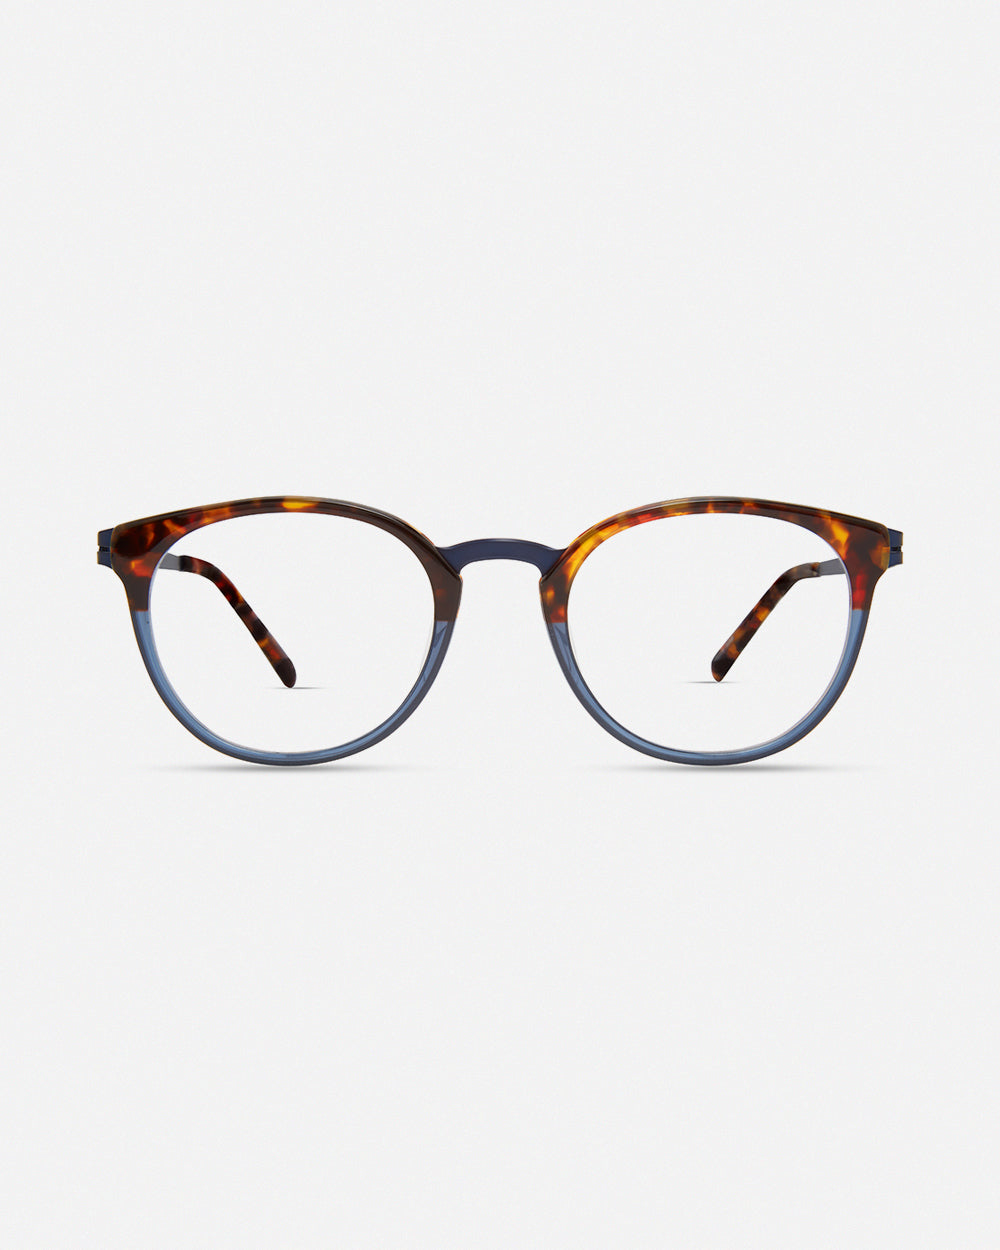 Eyeglasses – Page 6 – MODO Eyewear